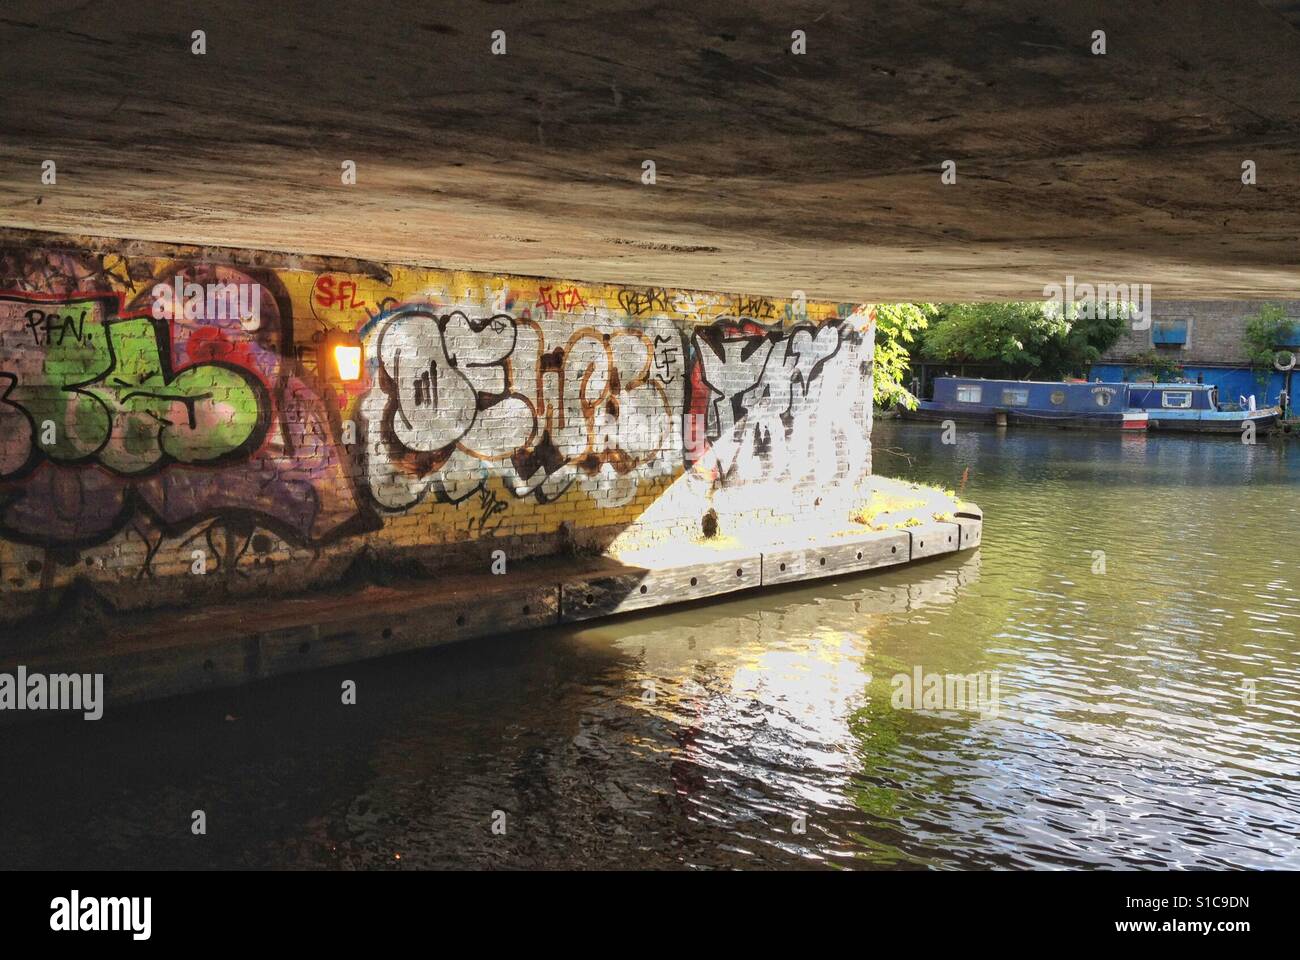 Graffiti lake street London Stock Photo - Alamy